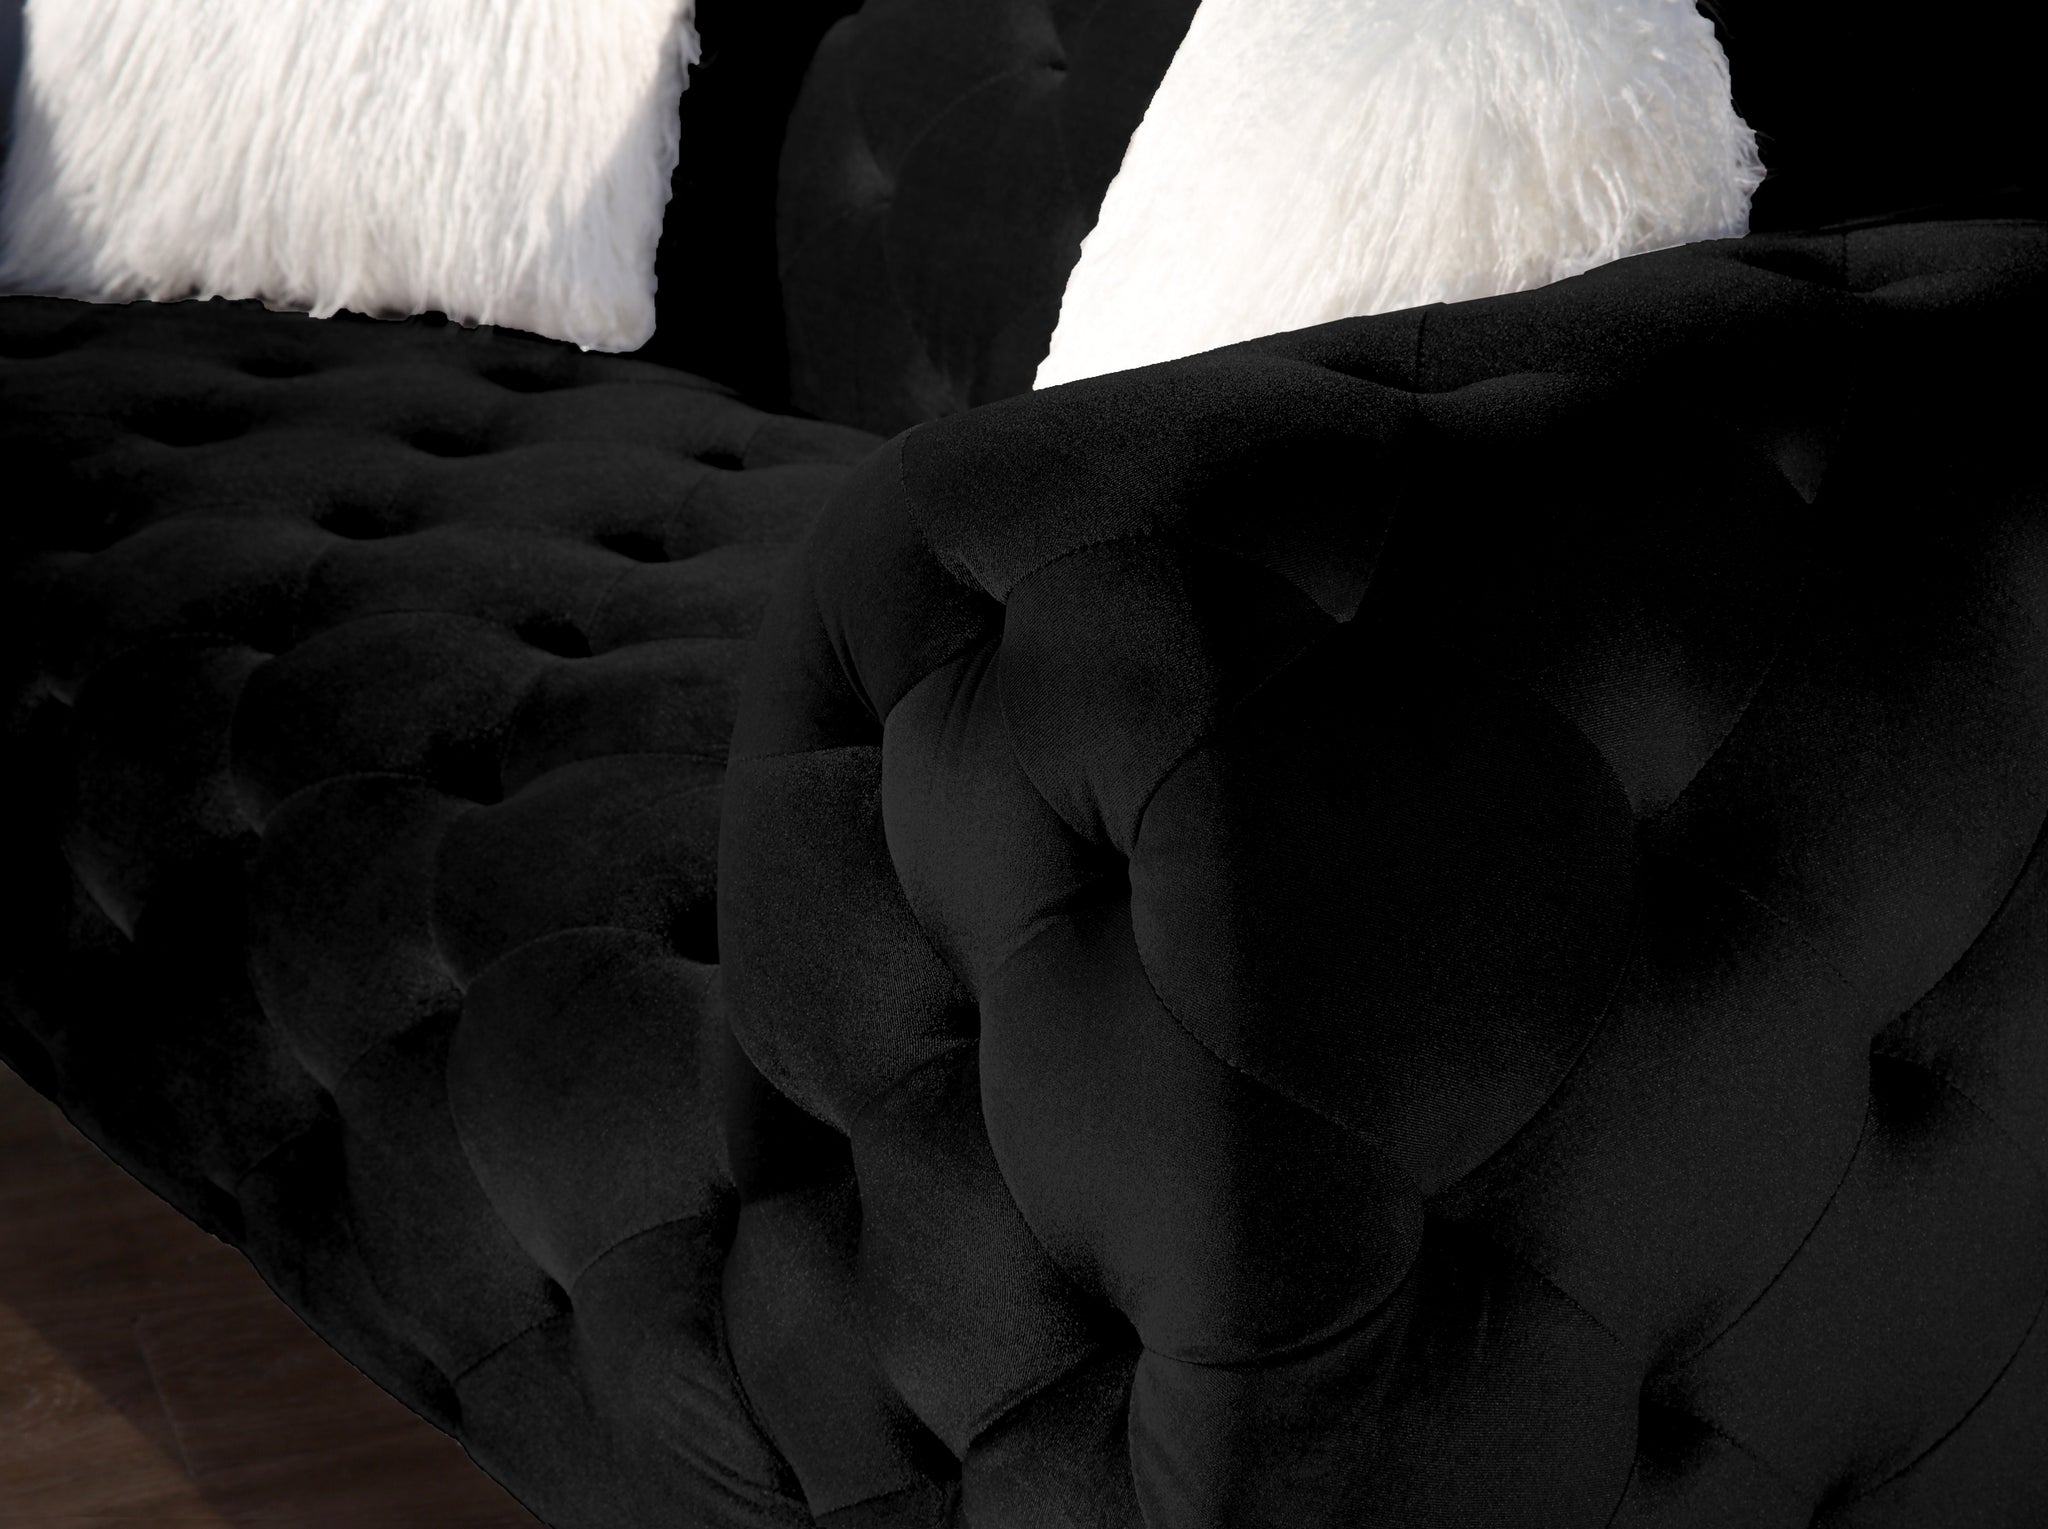 Black Plush Loveseat Furniture Cover for Ultimate black-velvet